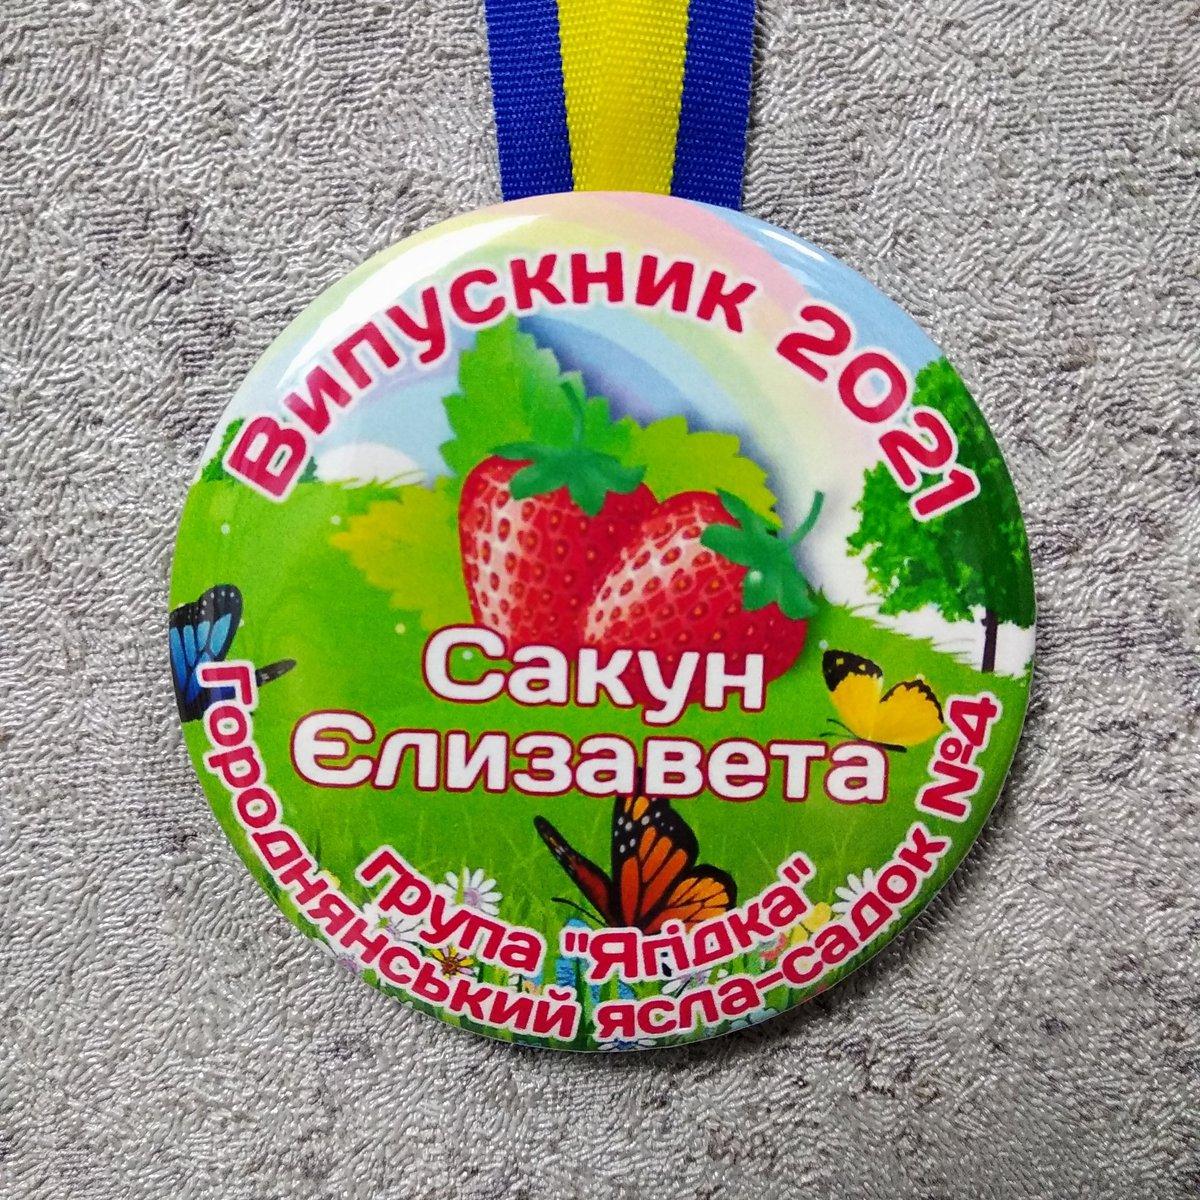 Іменні медалі для випускників групи дитячого садочку "Ягідка"